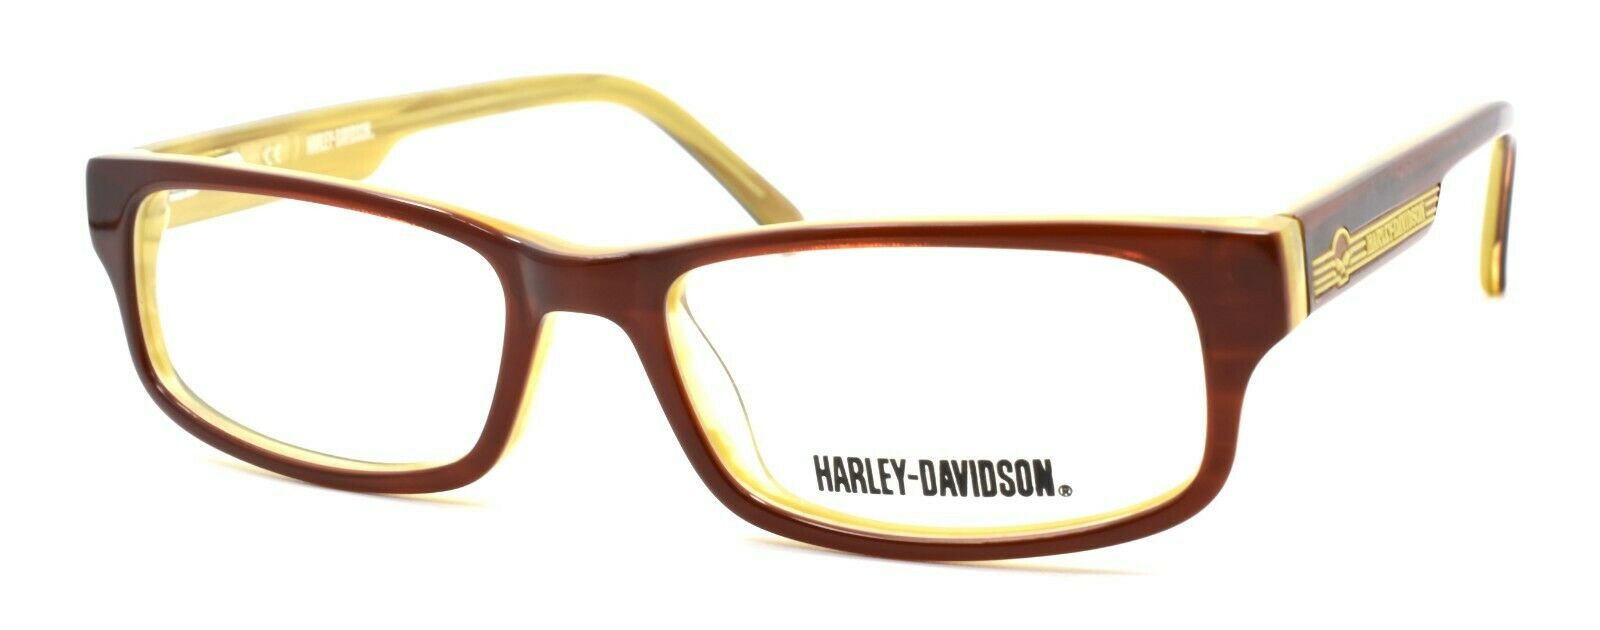 1-Harley Davidson HDT106 BRN Eyeglasses Frames SMALL 49-16-135 Brown-715583255845-IKSpecs